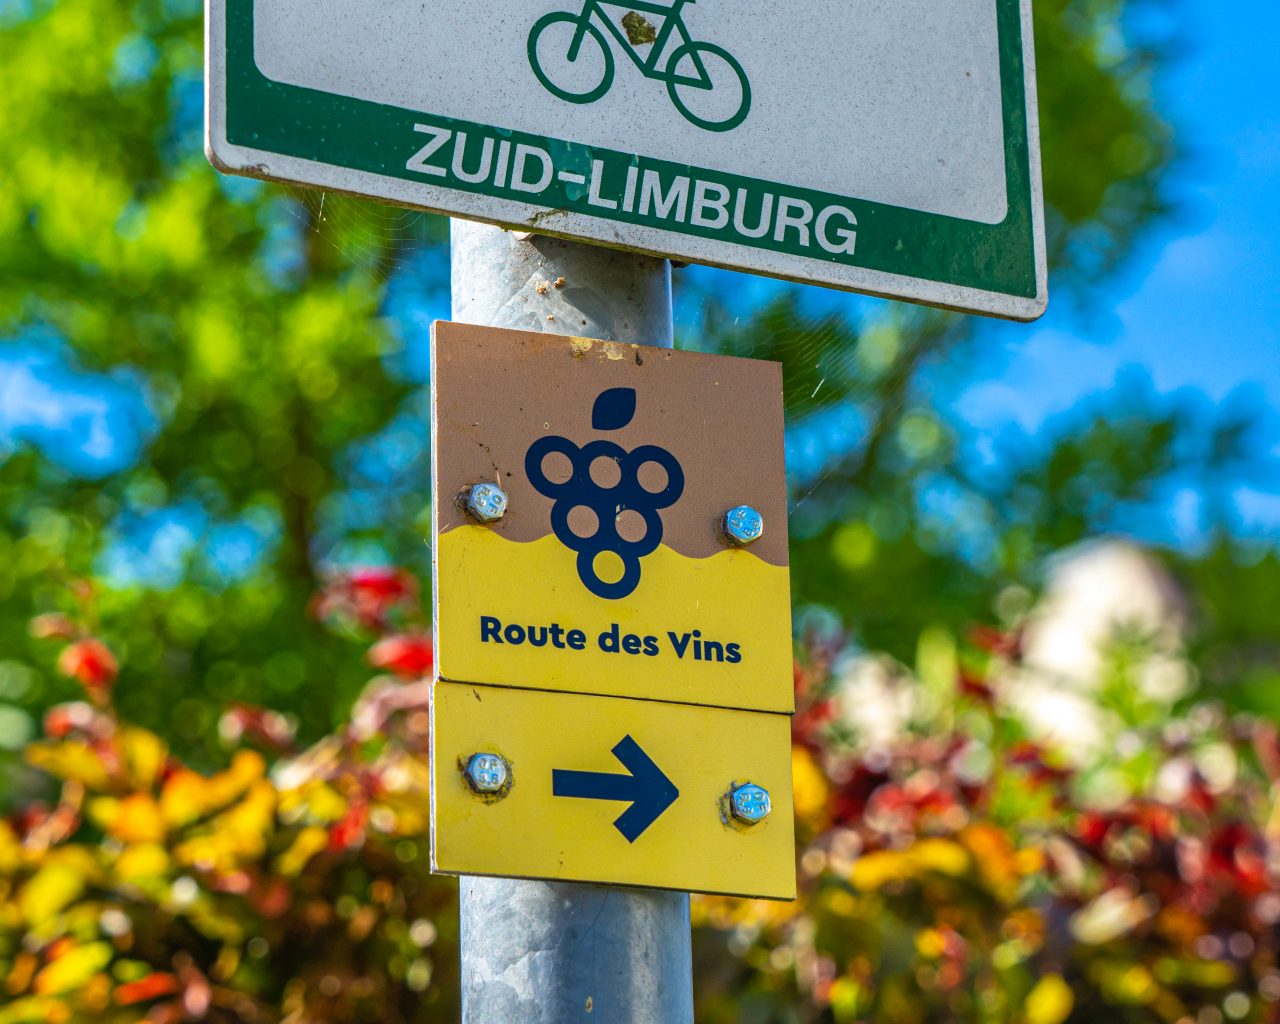 bordje-route-des-vins-markering-zuid-limburg